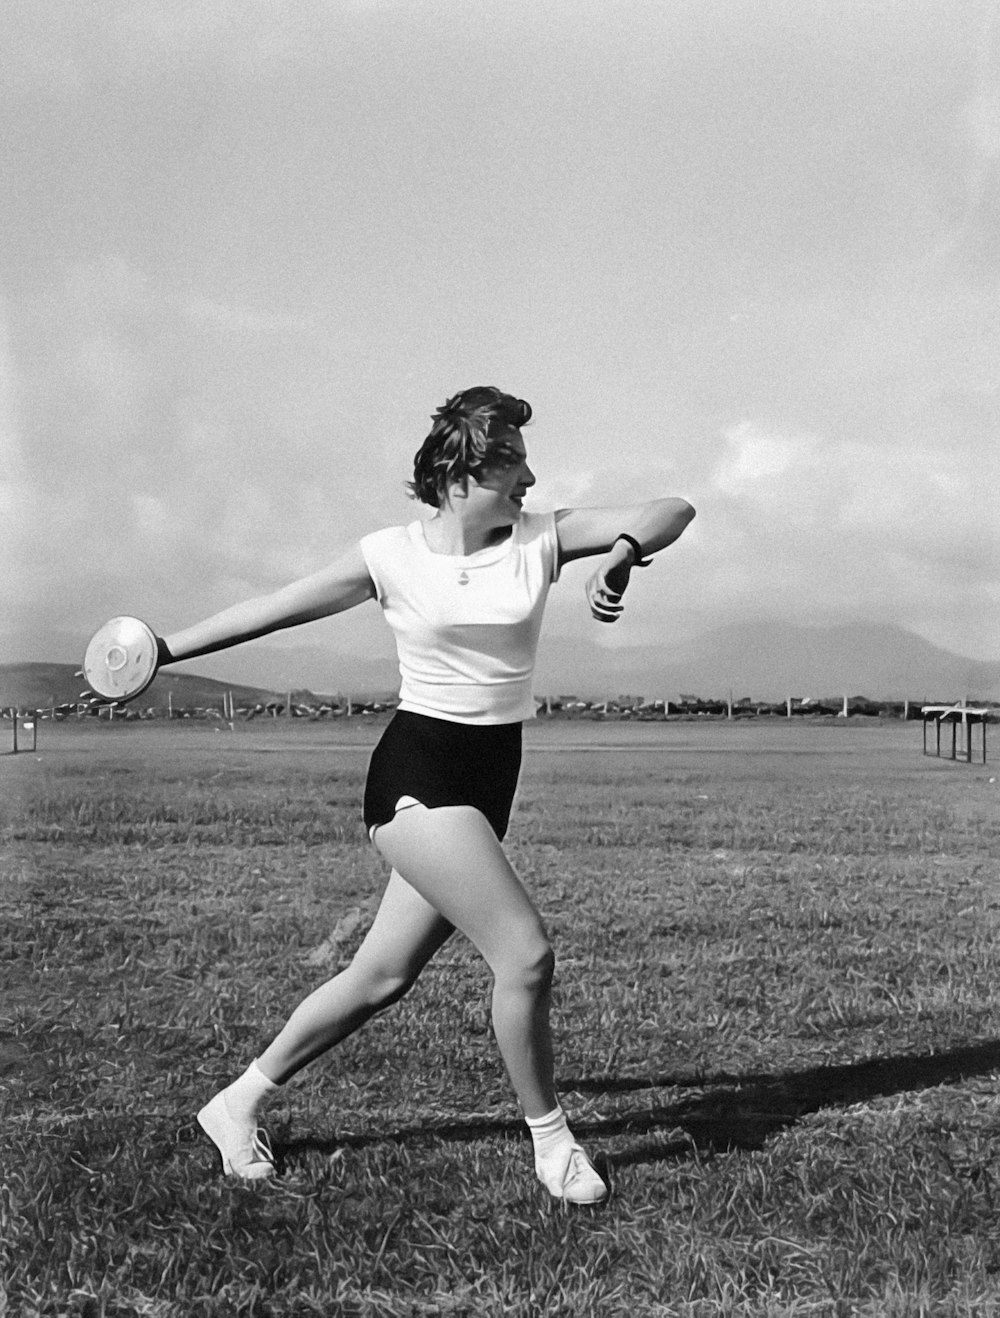 Una foto en blanco y negro de una mujer jugando al frisbee